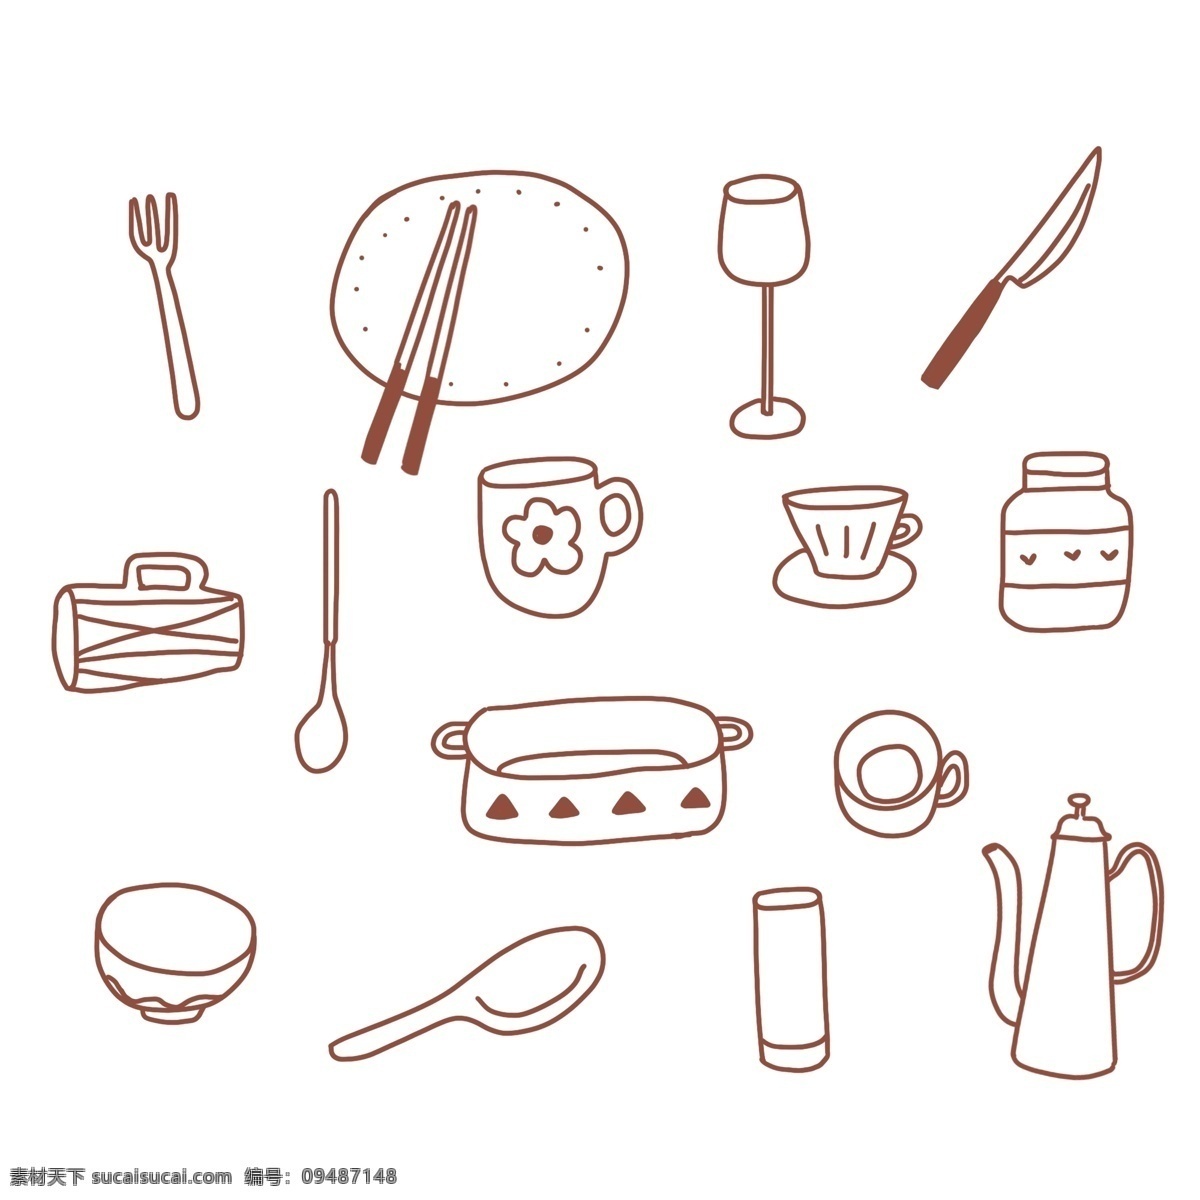 厨房 餐具 矢量 饮品杯 酒瓶 咖啡杯 刀叉 标志图标 其他图标